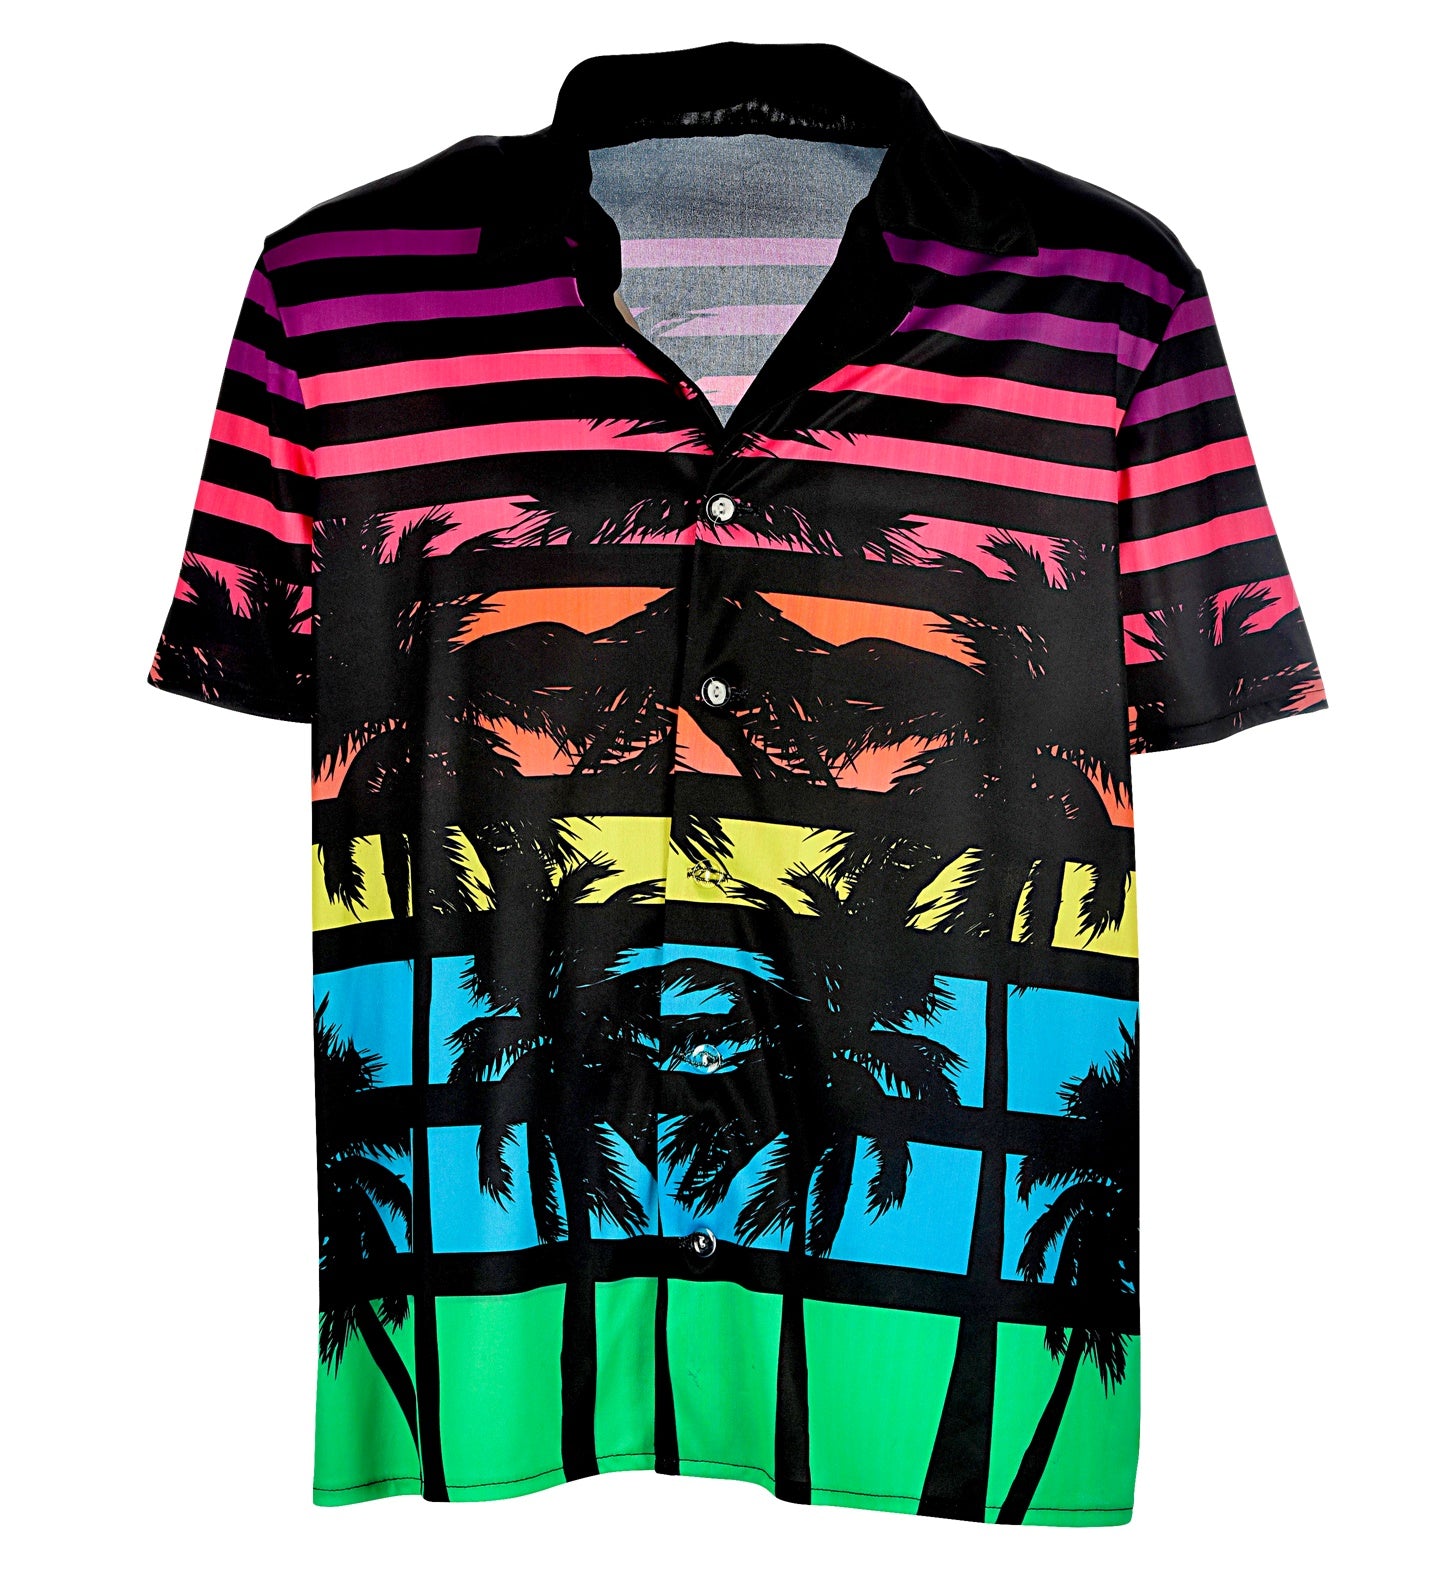 80's Miami fancy dress Shirt